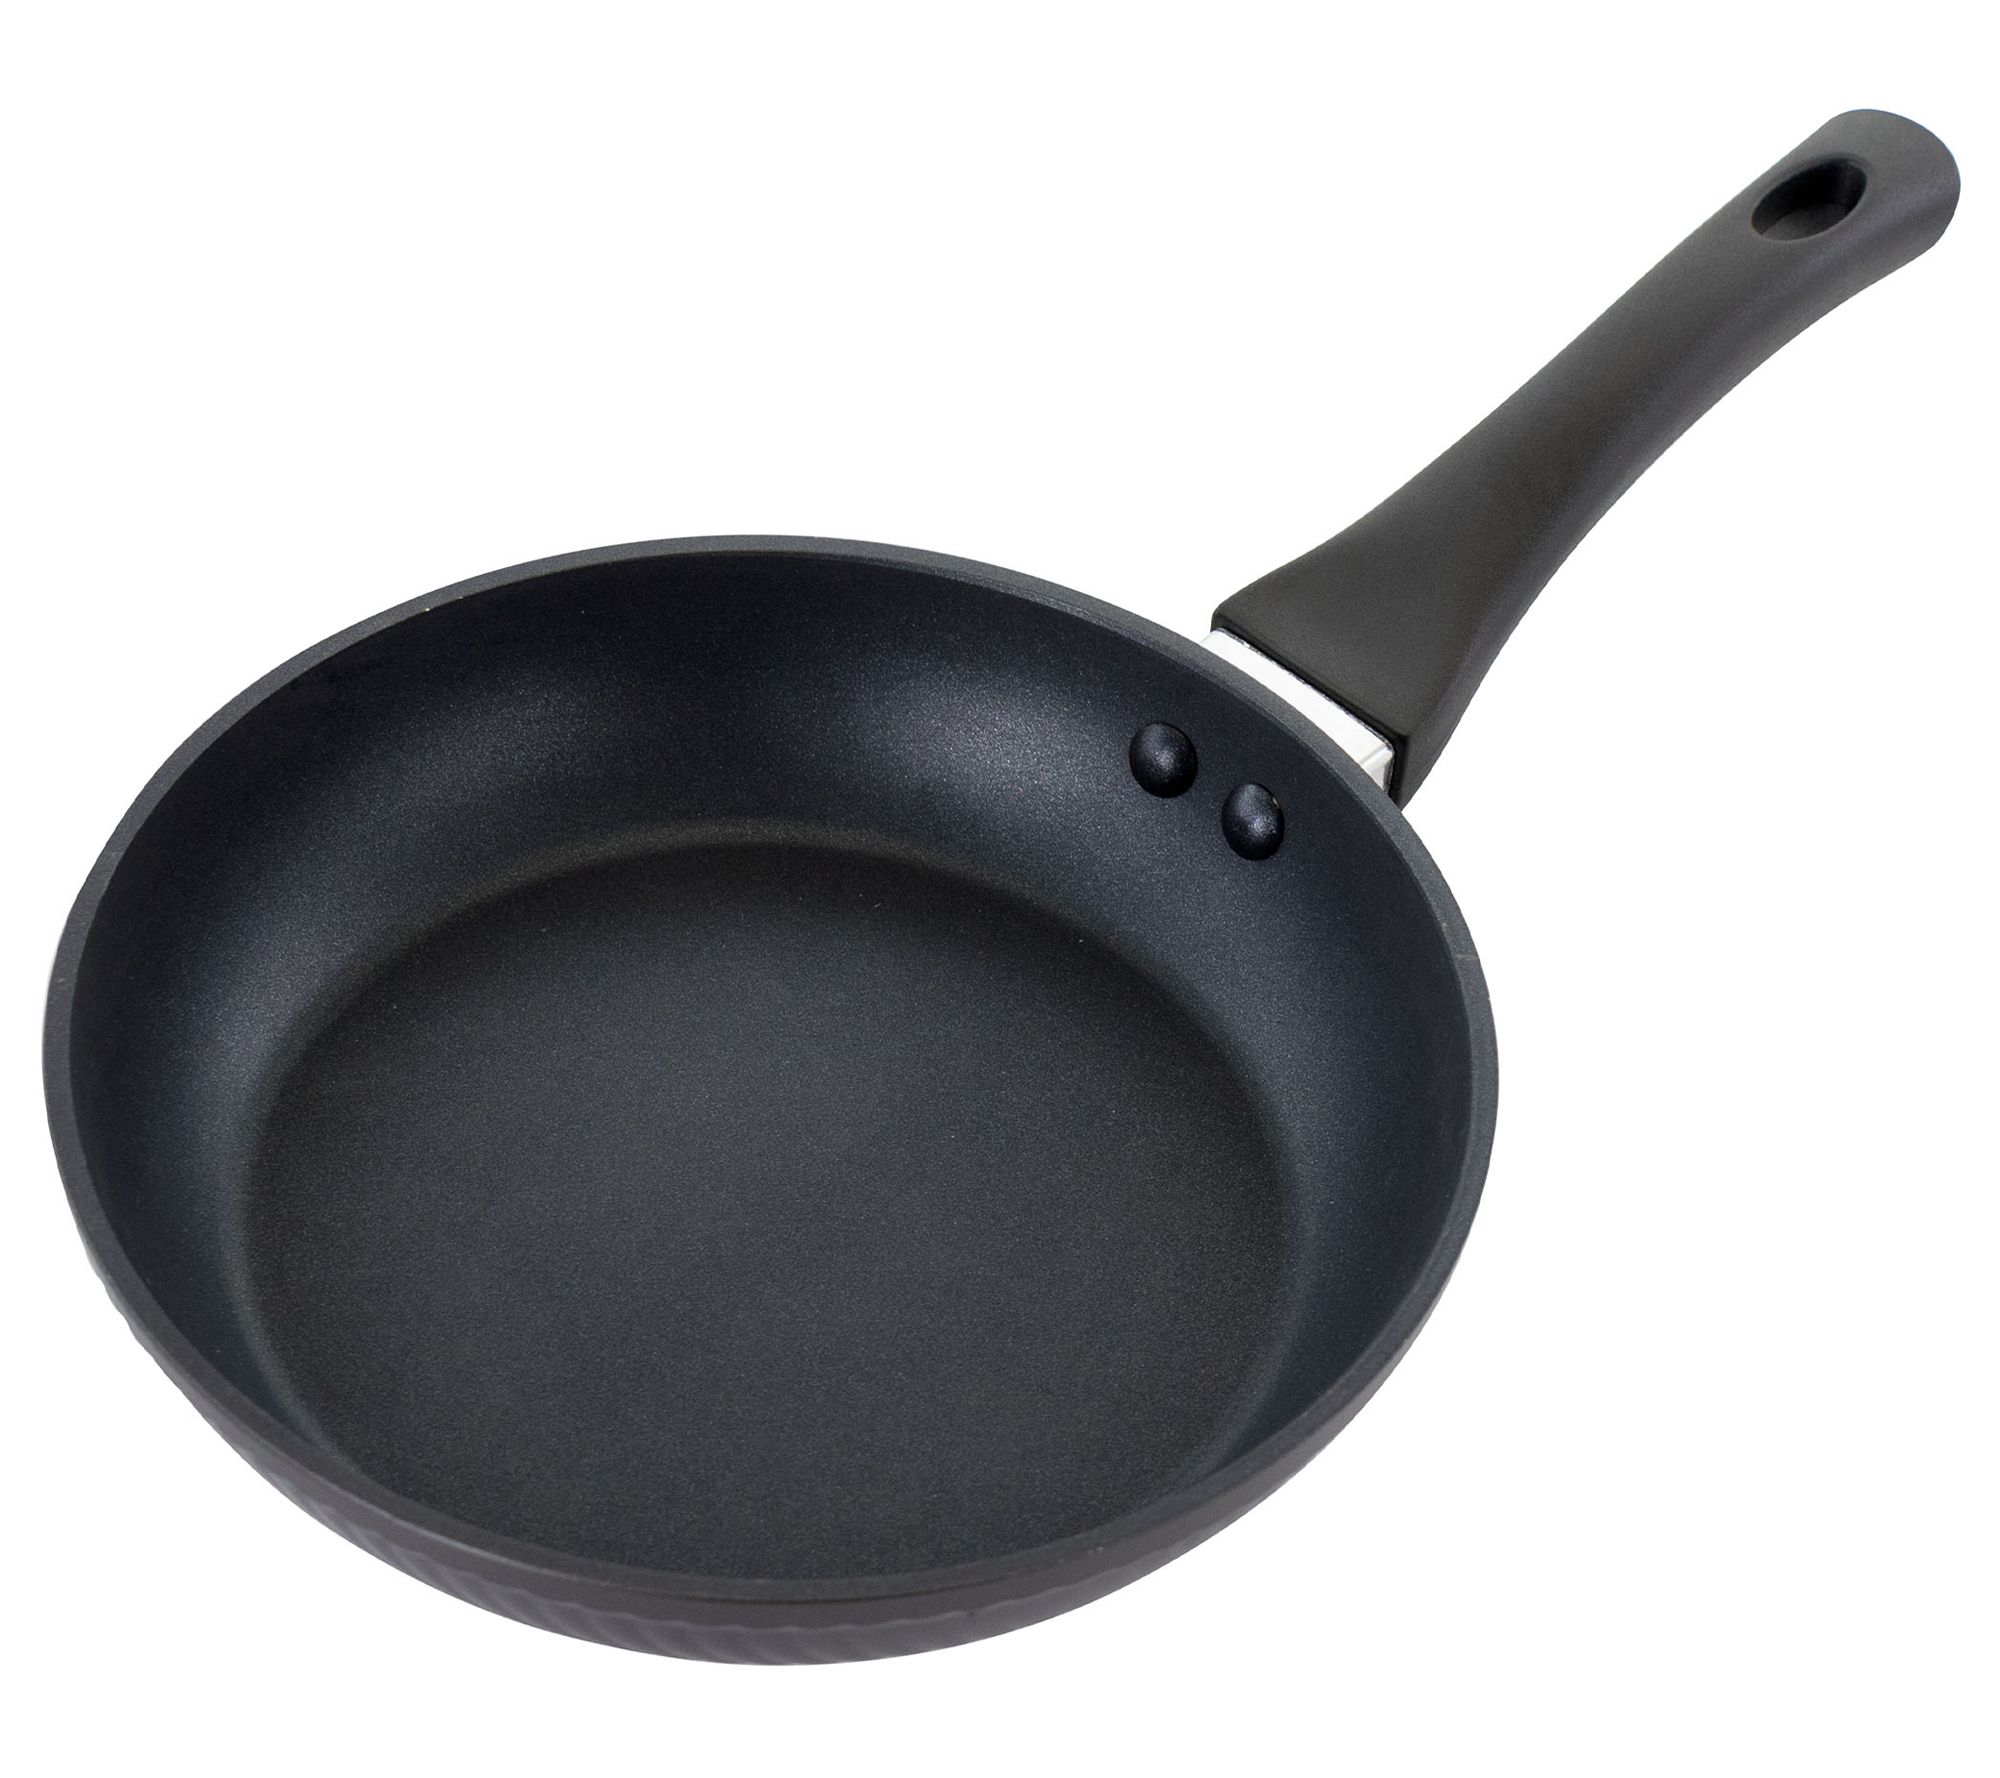 Oster Kono 8 inch Aluminum Nonstick Frying Pan in Black with Bakelite Handles